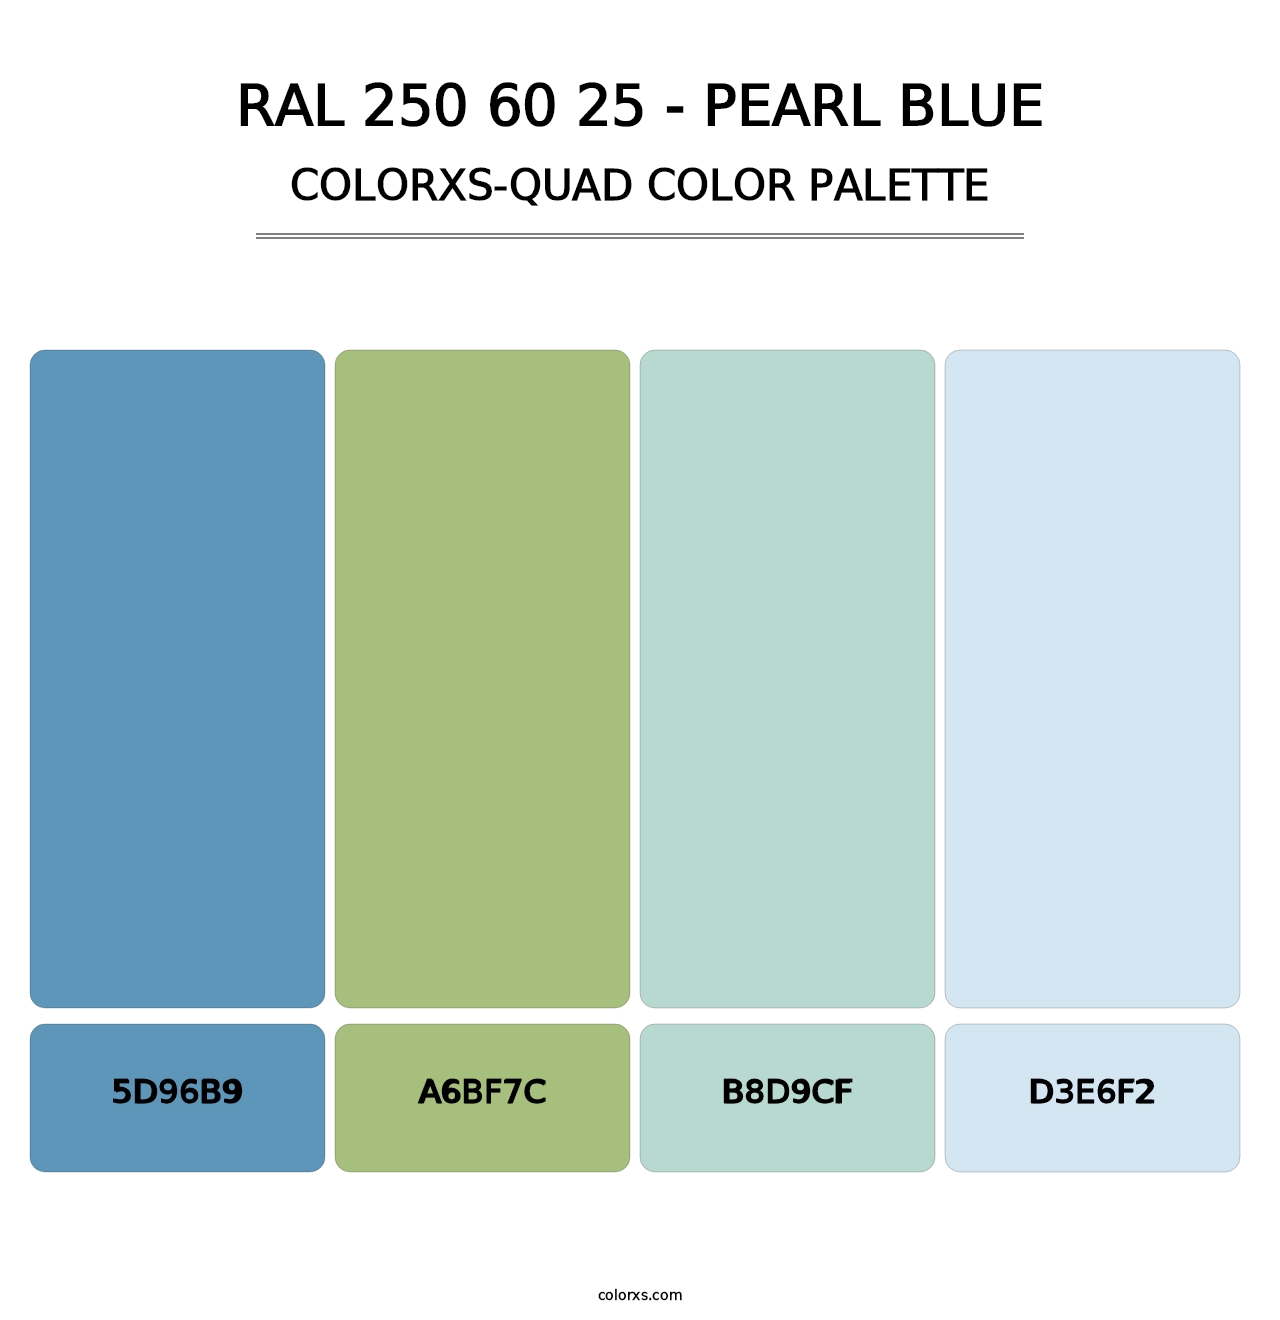 RAL 250 60 25 - Pearl Blue - Colorxs Quad Palette